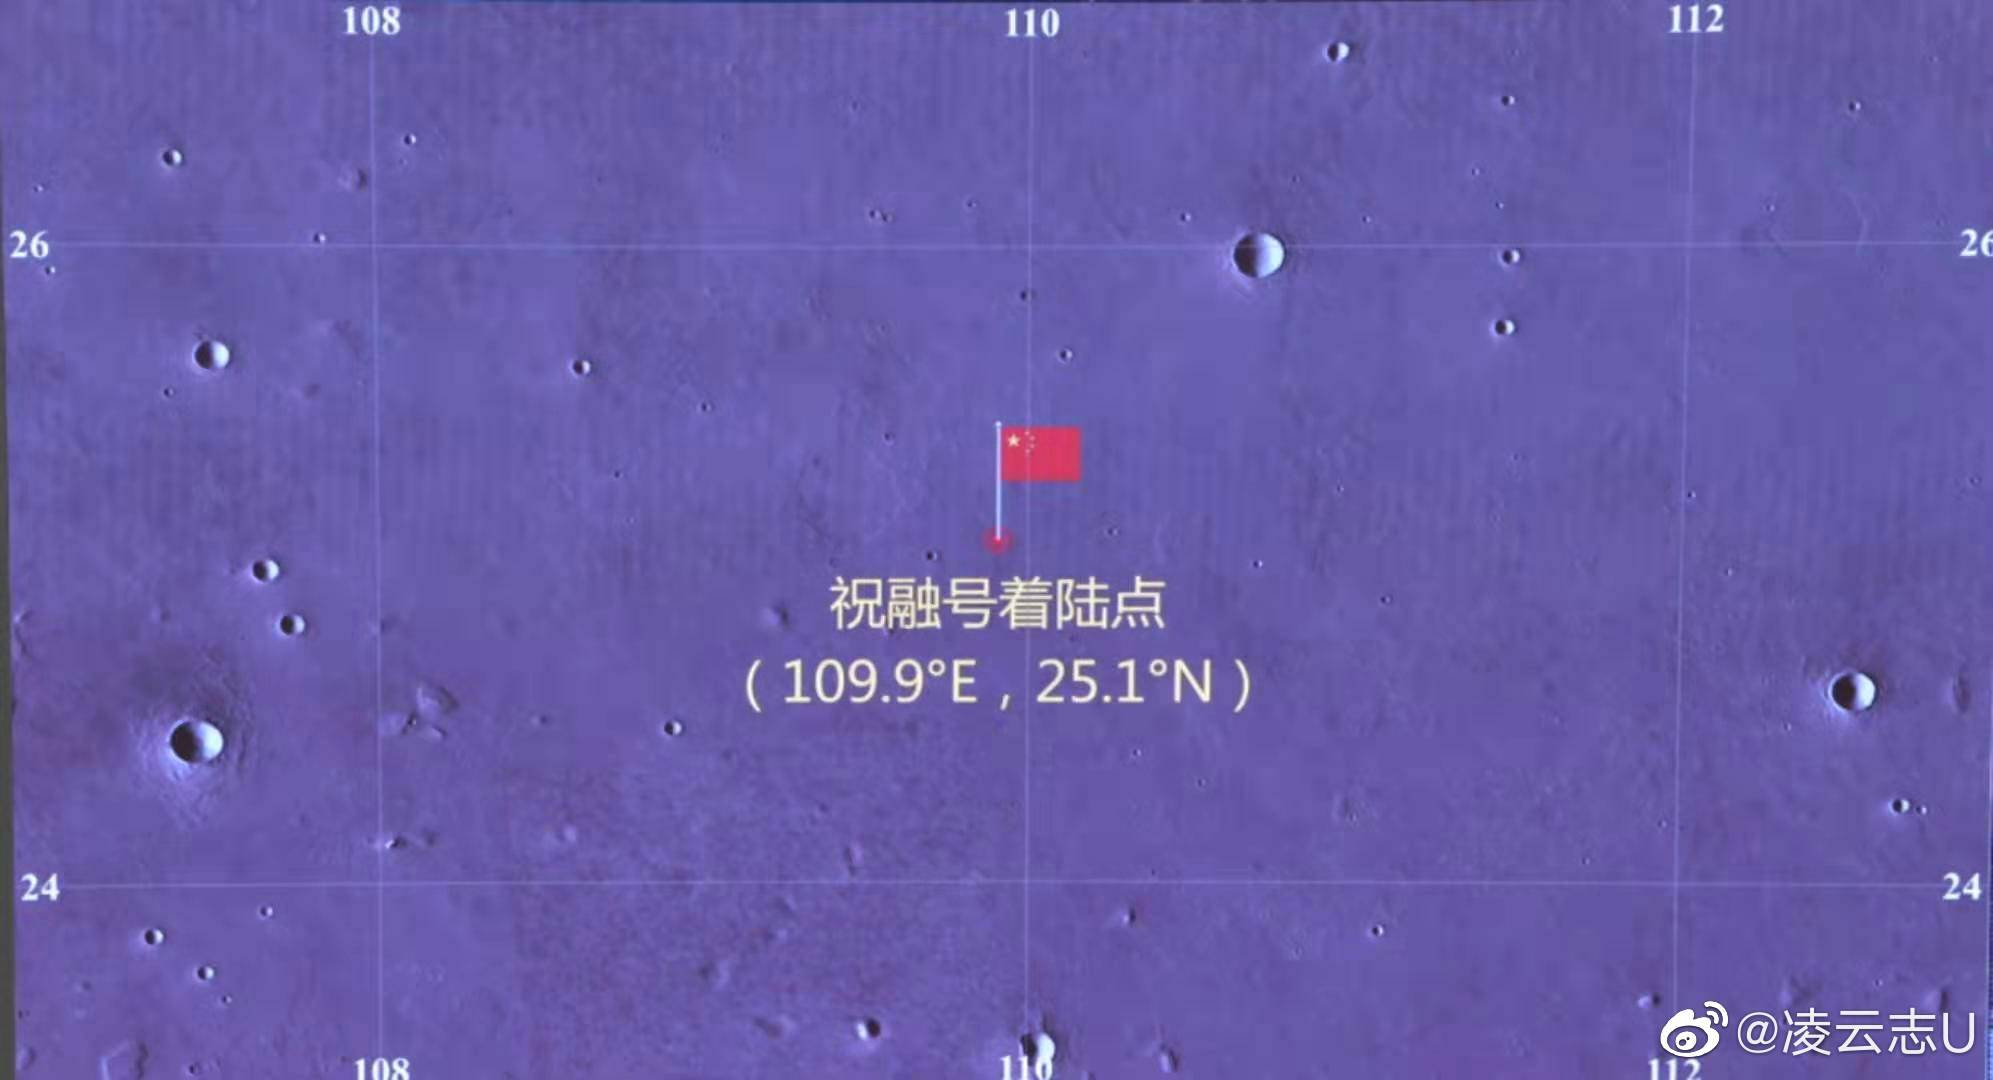 Landing-map_coordinates_Weibo.jpg.a1c4fbf5baa1c6737d7d532674b1760a.jpg